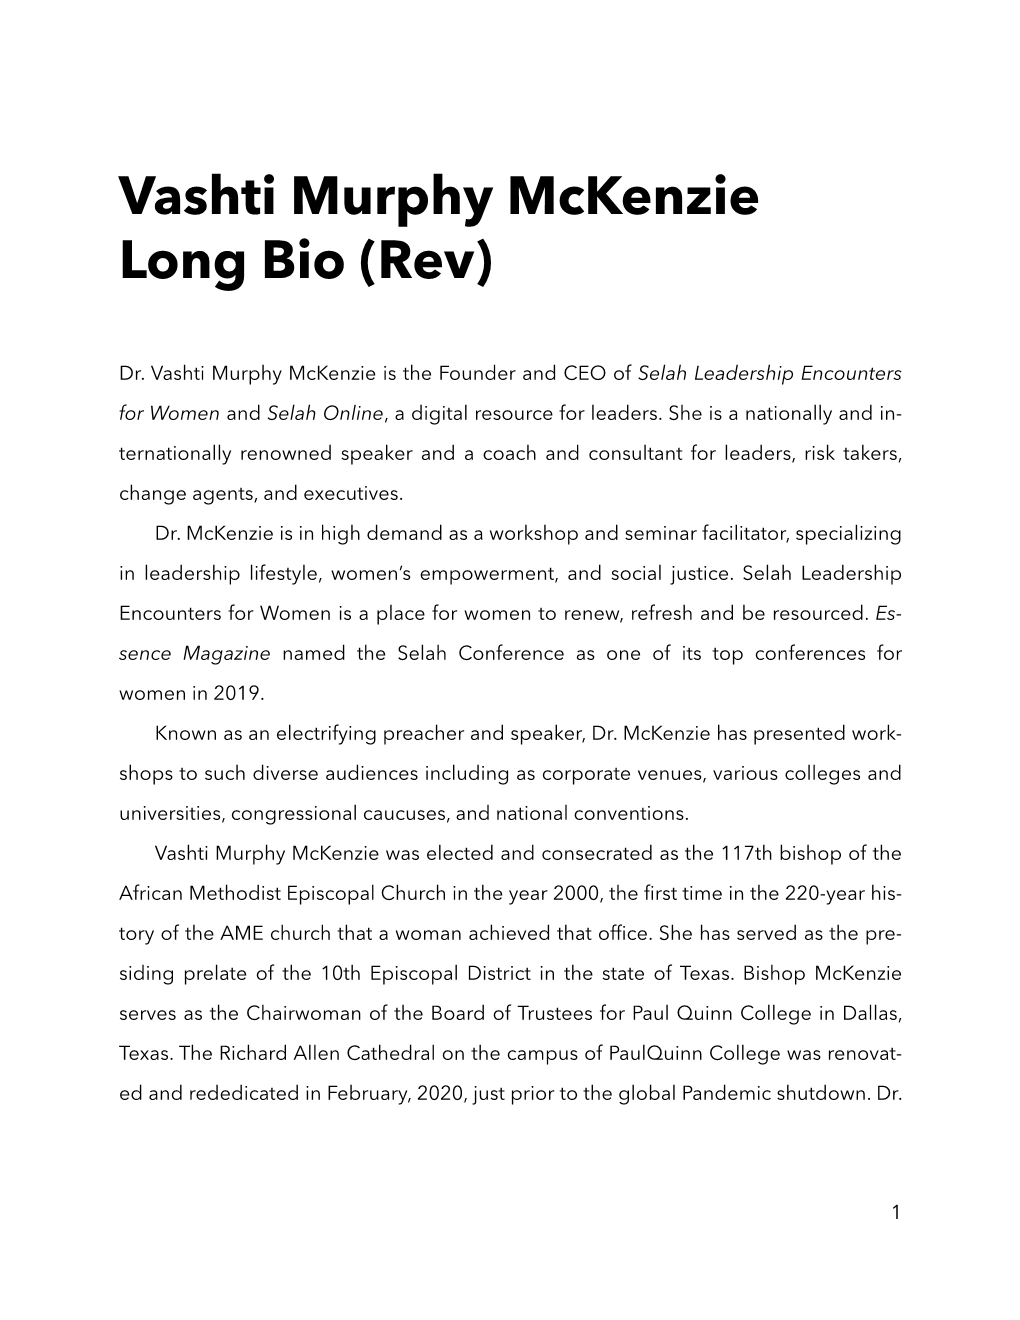 Vashti Murphy Mckenzie Long Bio (Rev)